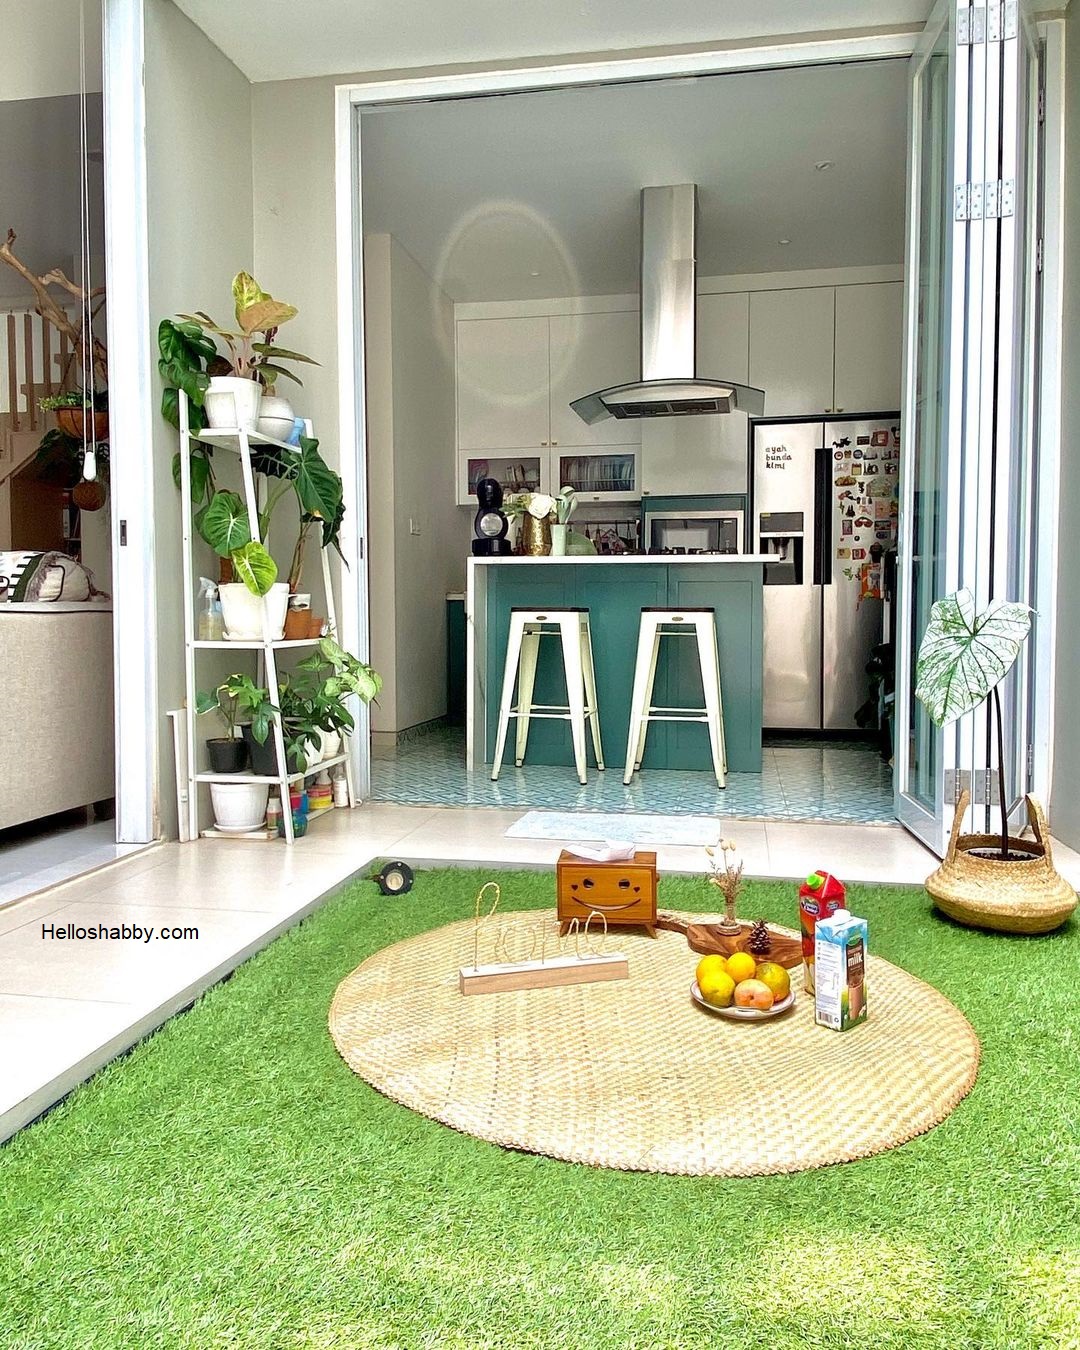 7 Desain Dapur View Taman Belakang Yang Asri Dan Menawan HelloShabbycom Interior And Exterior Solutions